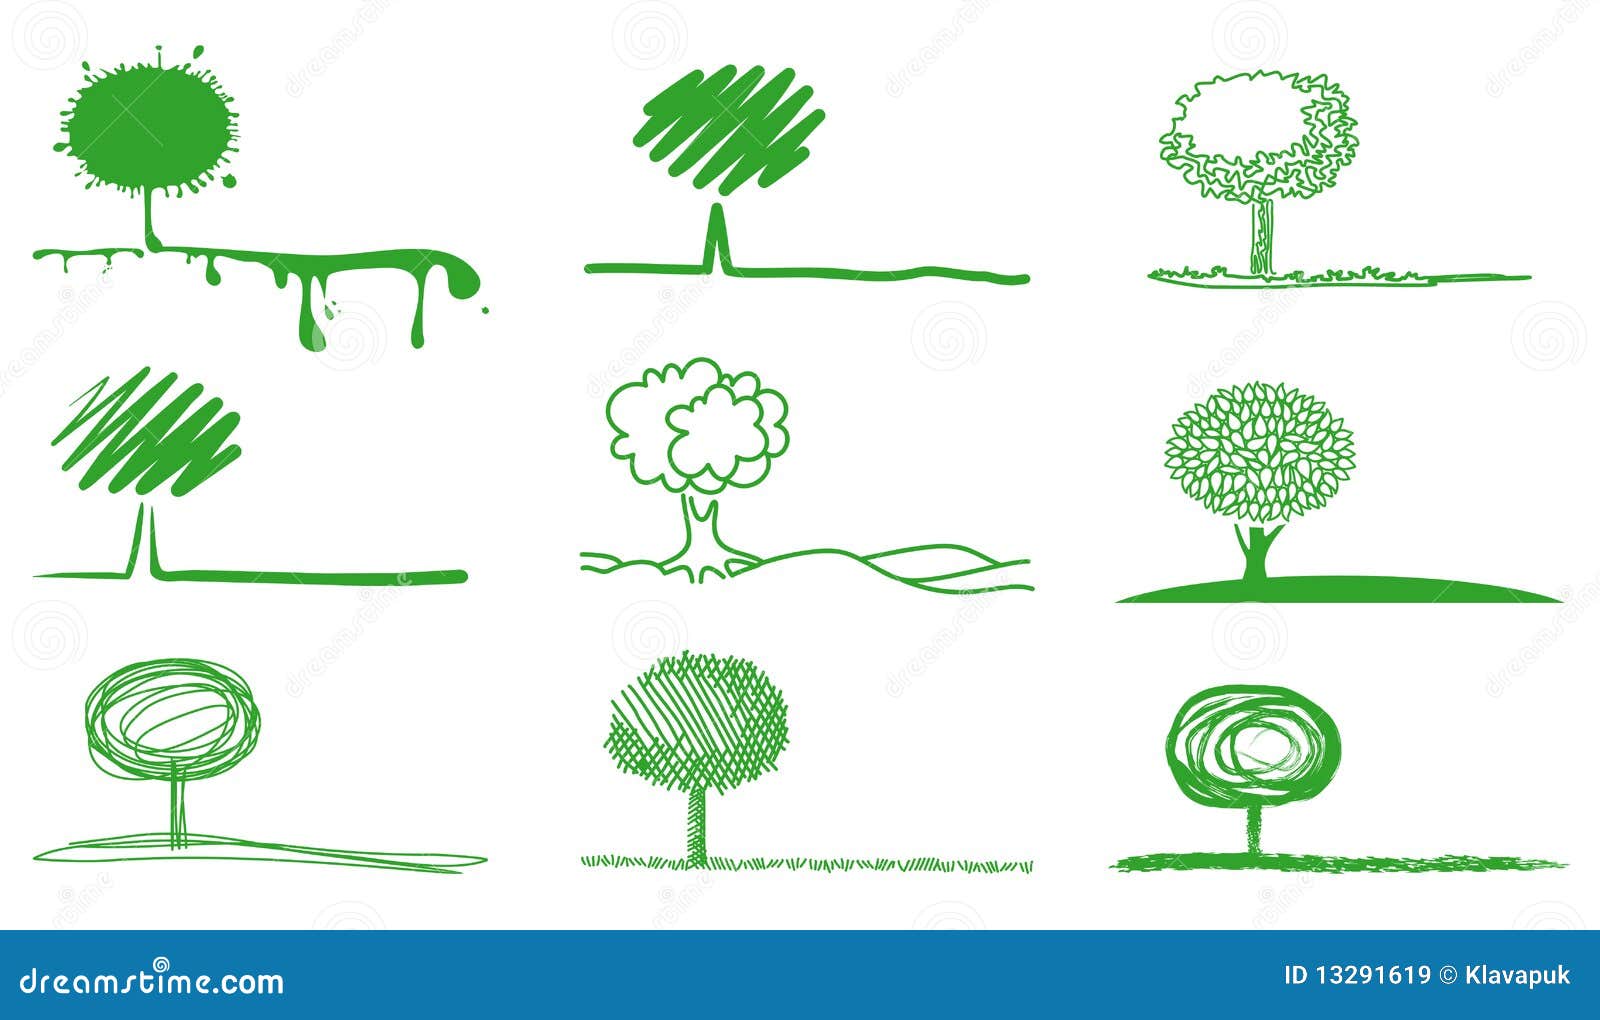 Ongekend Tekeningen van bomen vector illustratie. Illustratie bestaande uit ZC-26